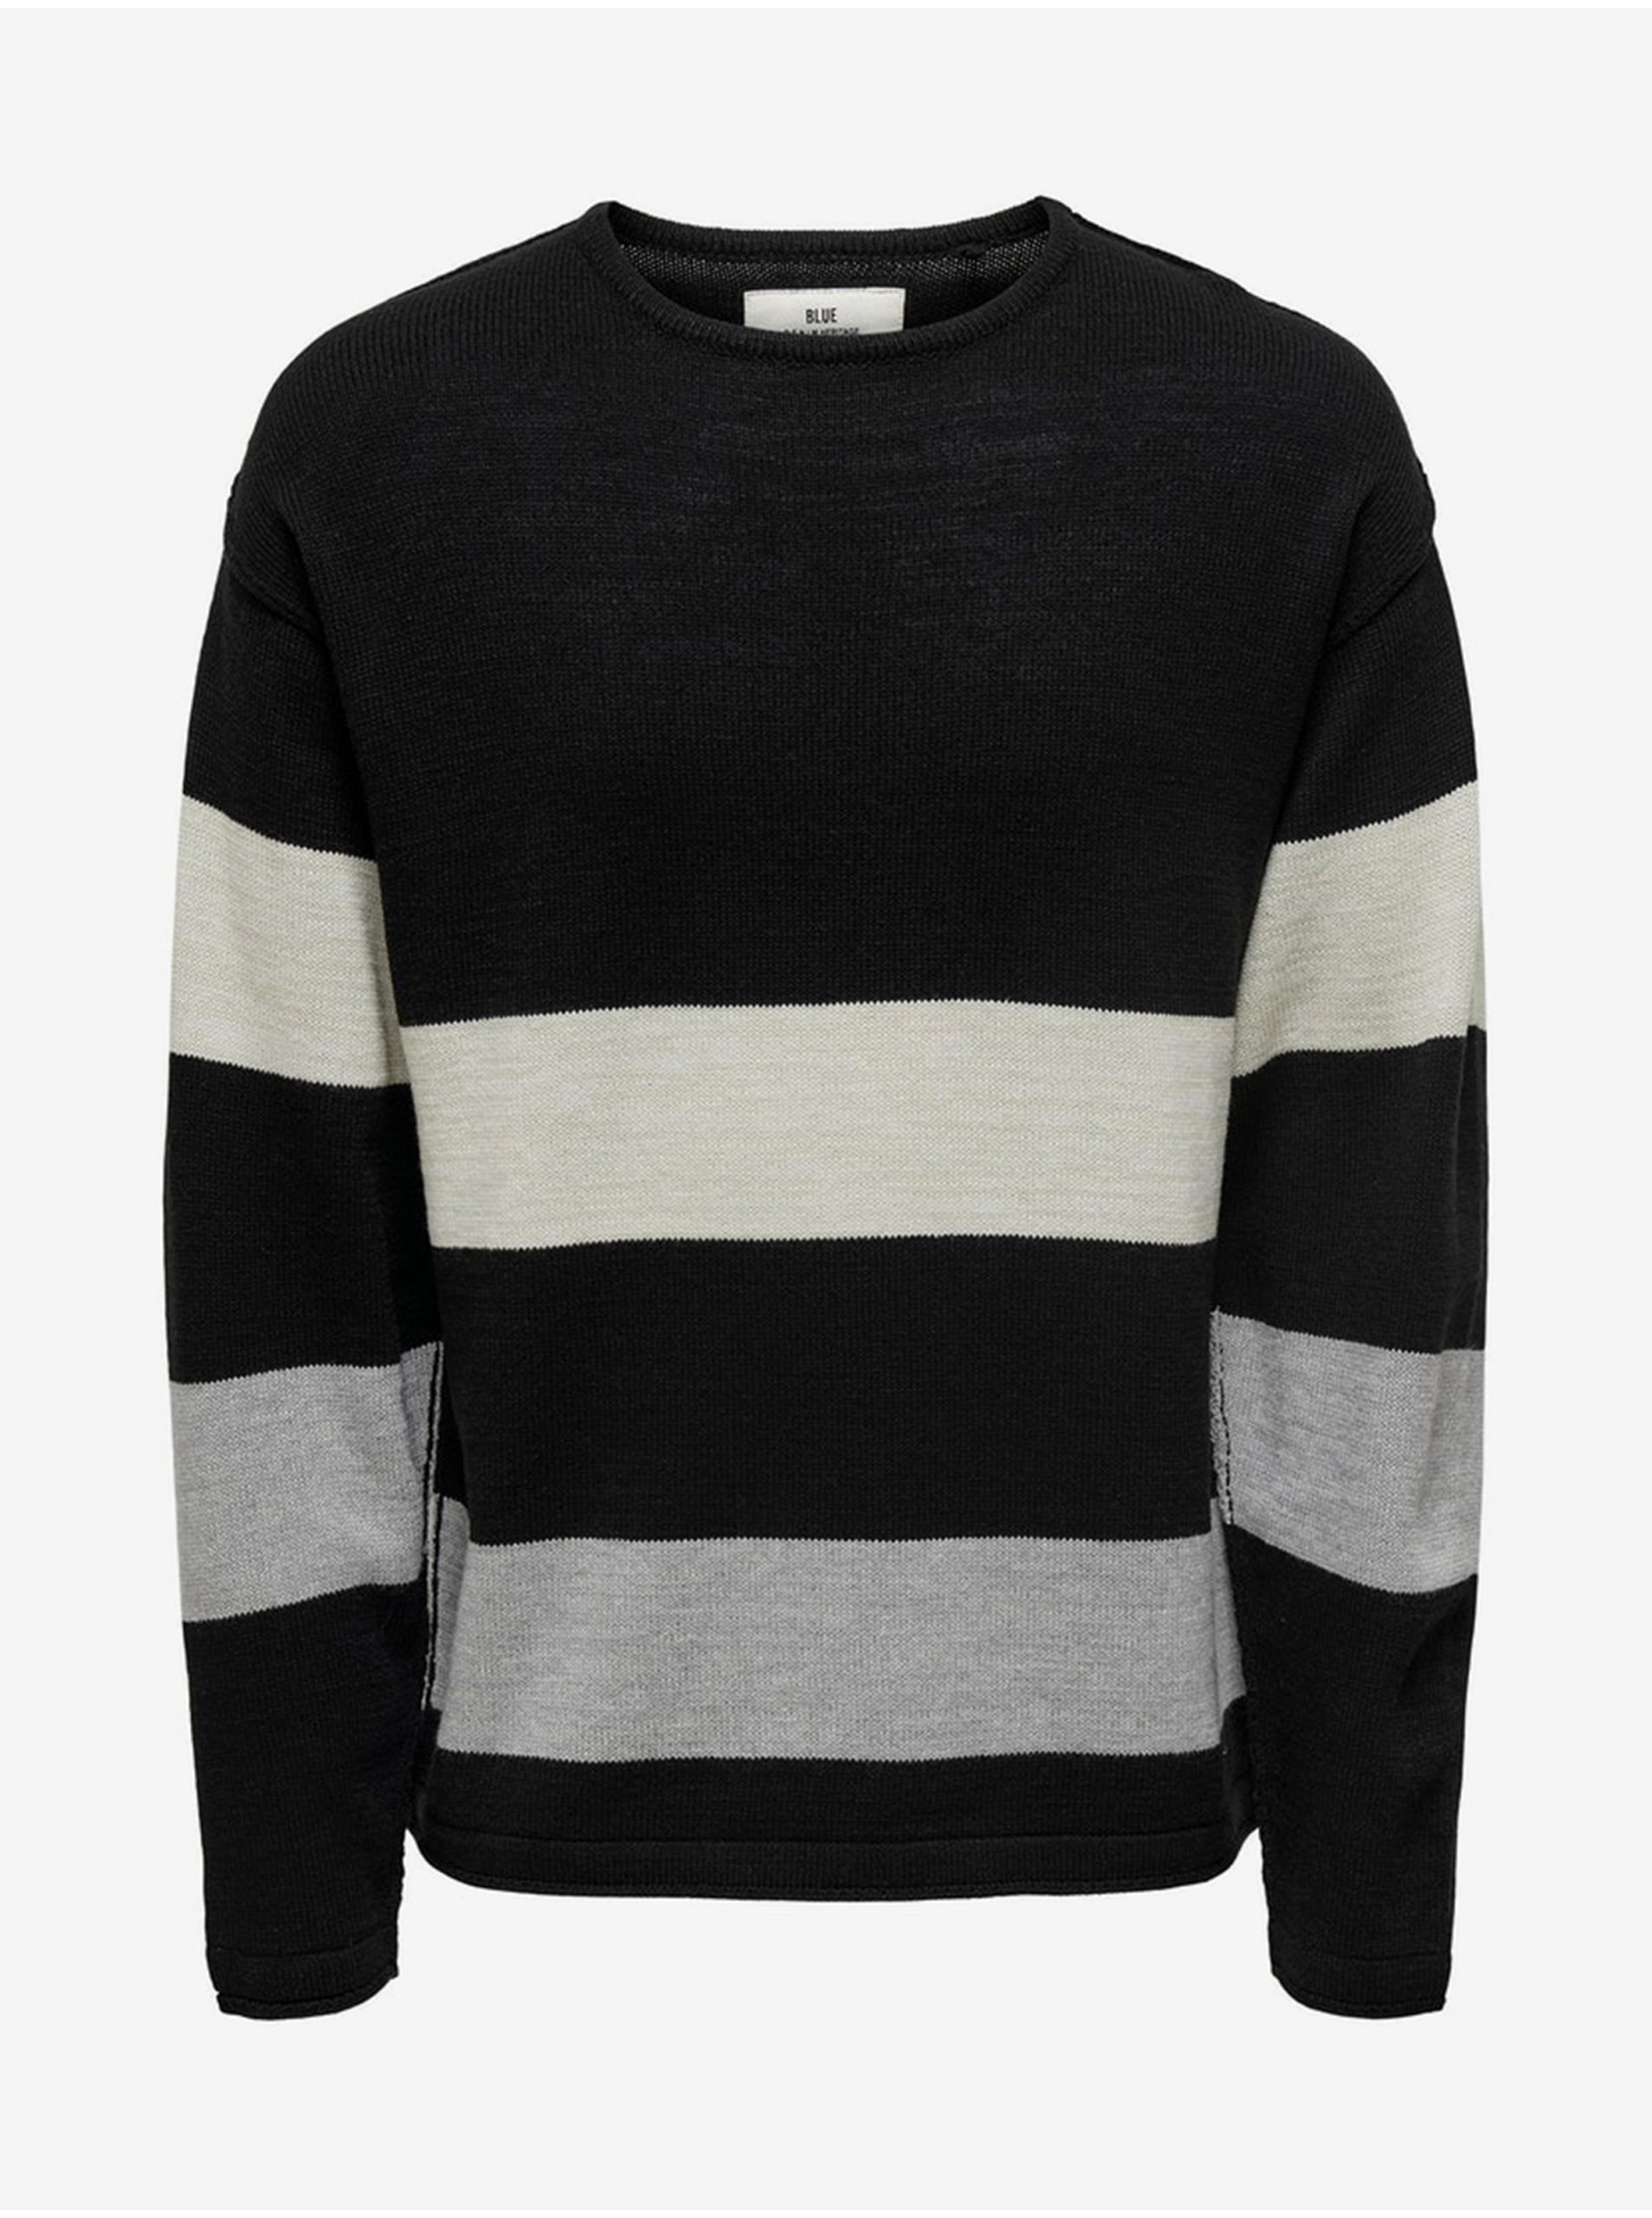 E-shop Čierny vzorovaný sveter ONLY & SONS Jan